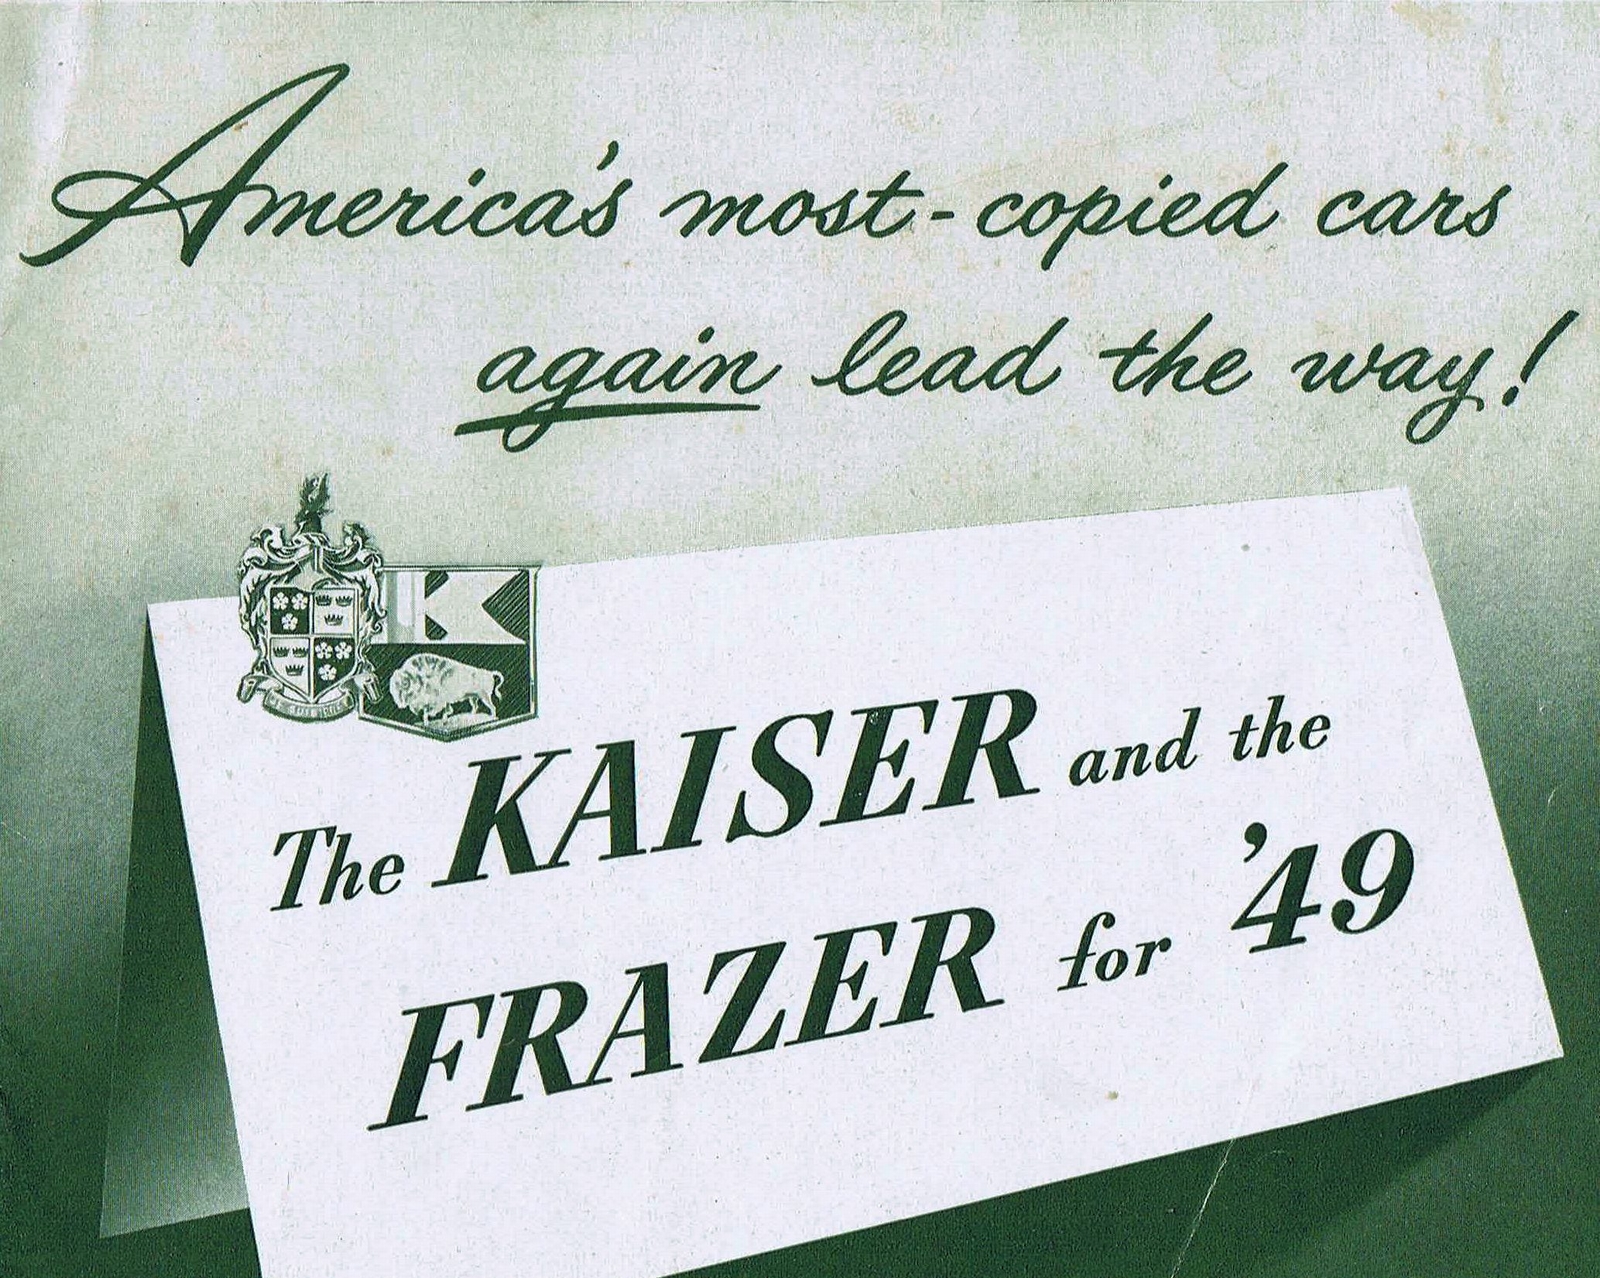 n_1949 Kaiser-Frazer-01.jpg